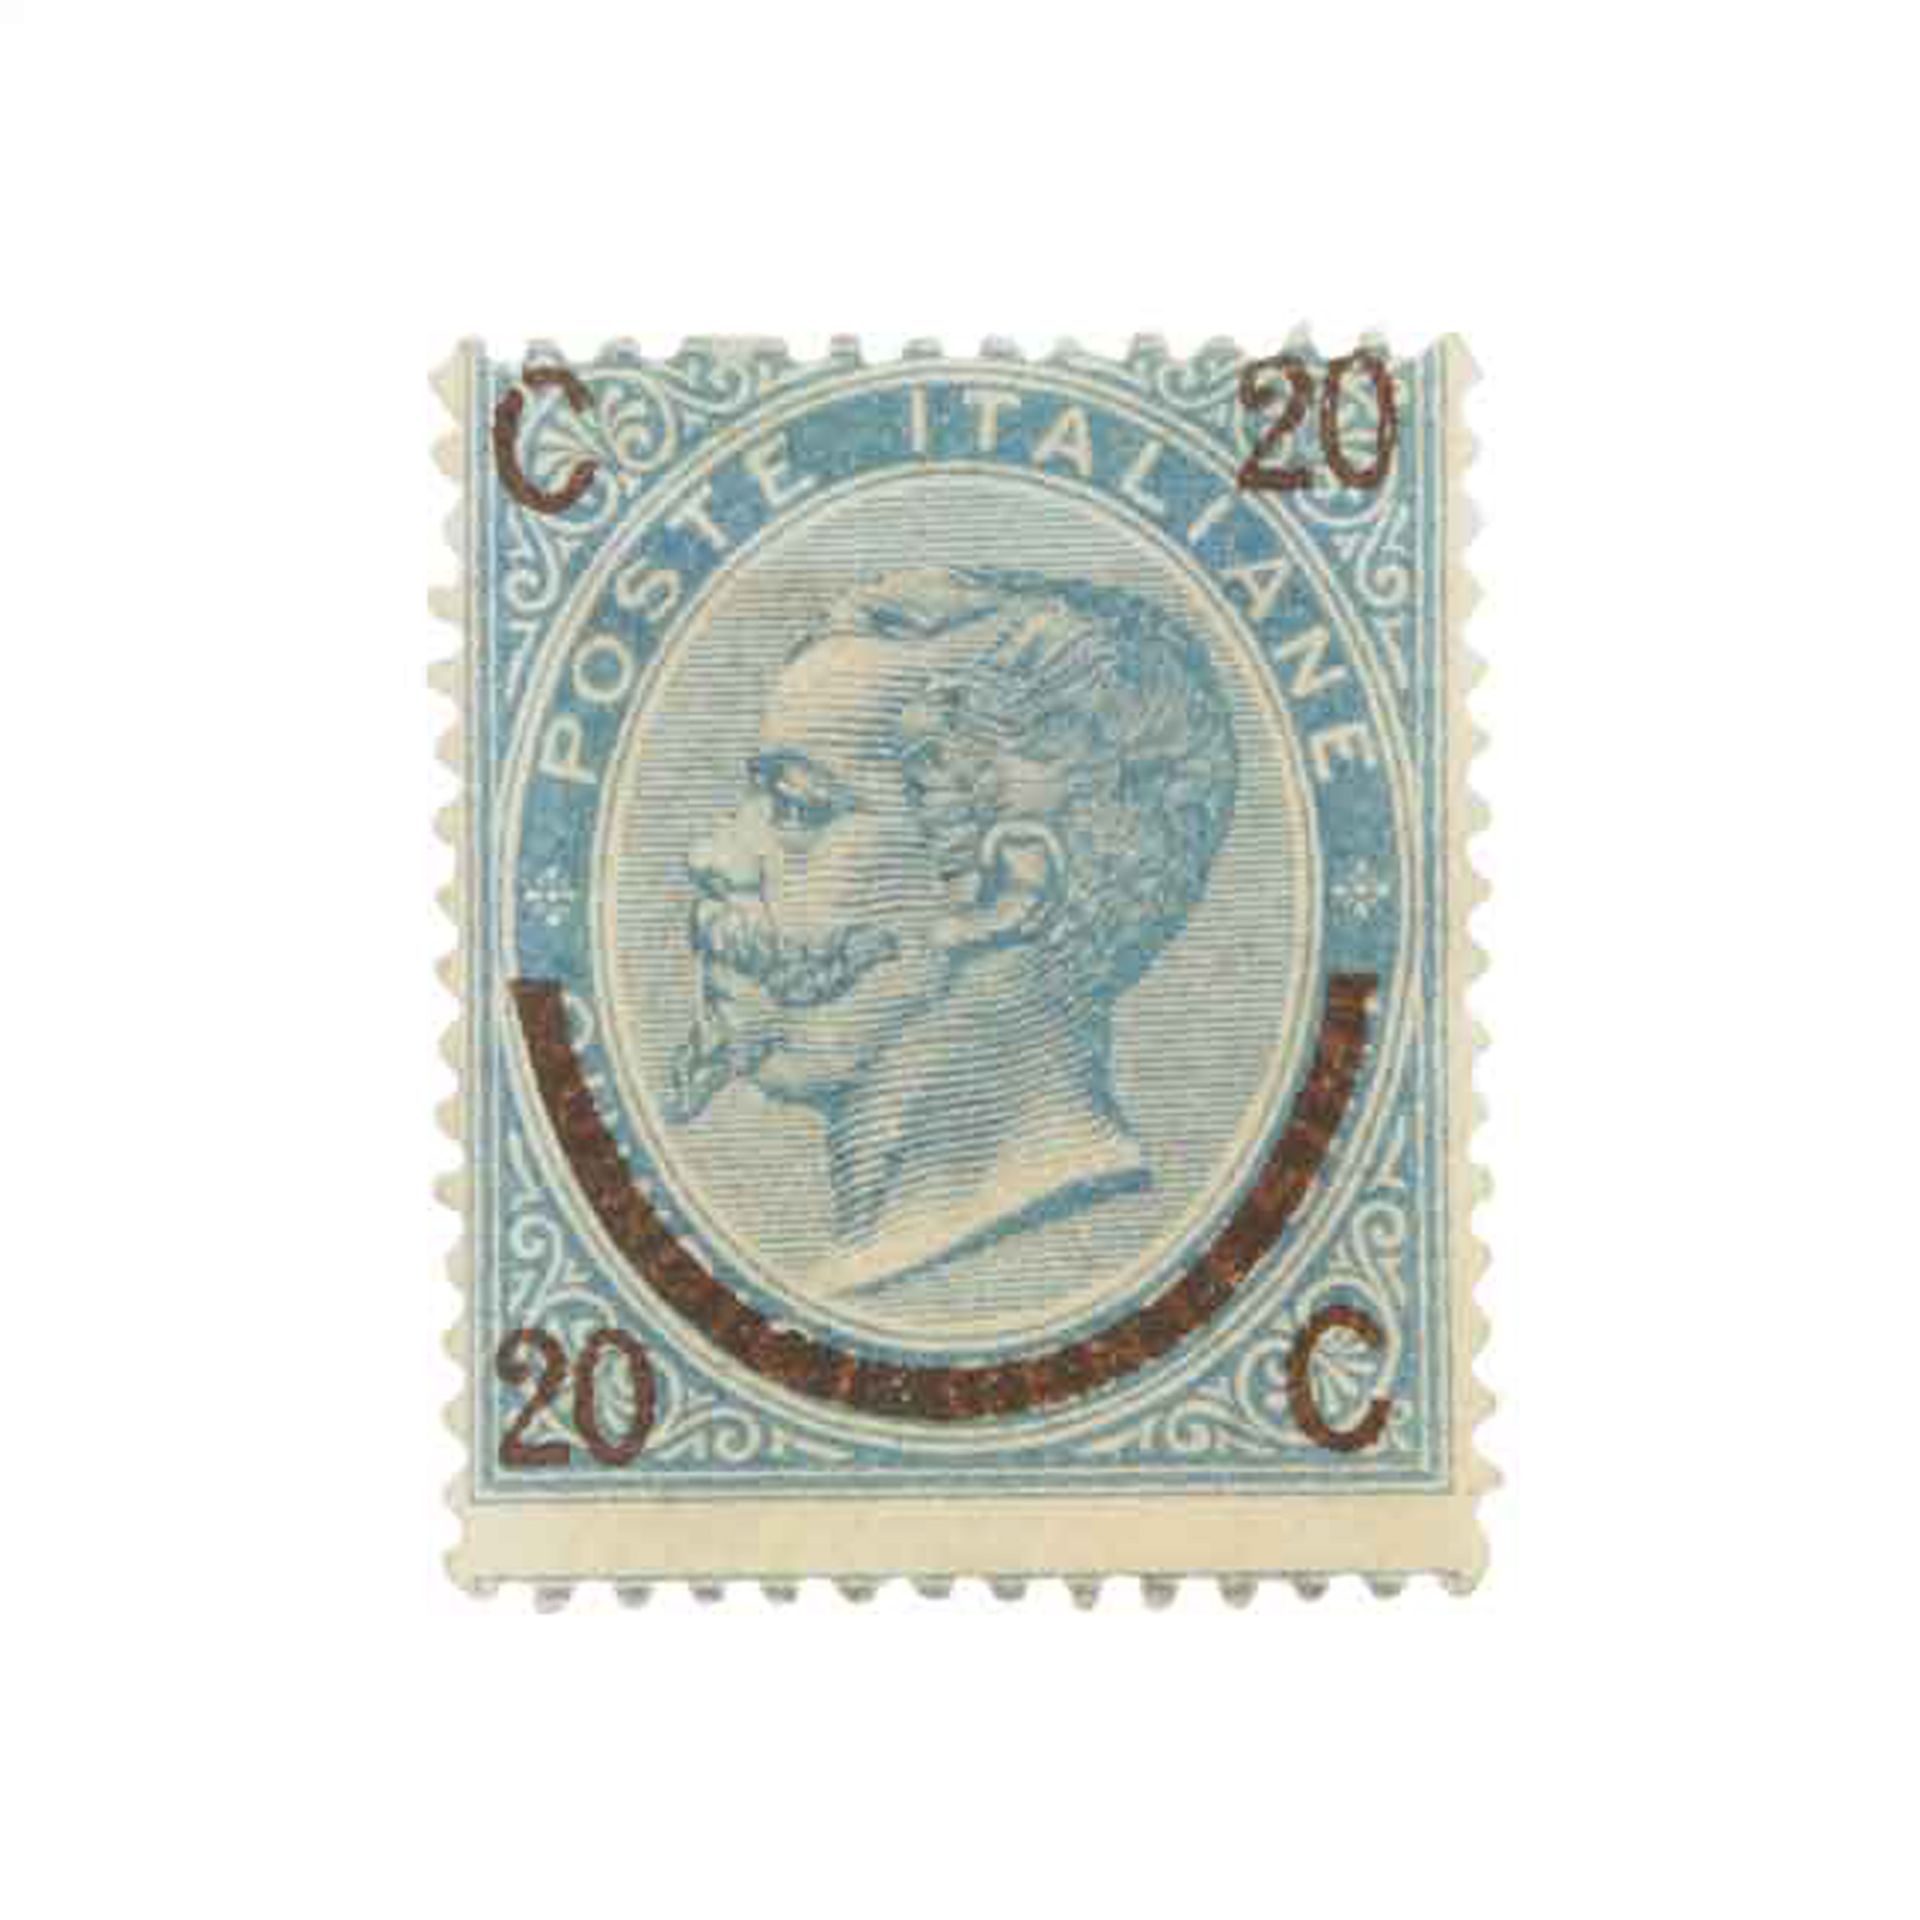 Italien - 1865, Prachtmarke der Mi.Nr. 25 I,Freimarke der Mi.Nr. 18 mit schwarzbraunem Aufdruck